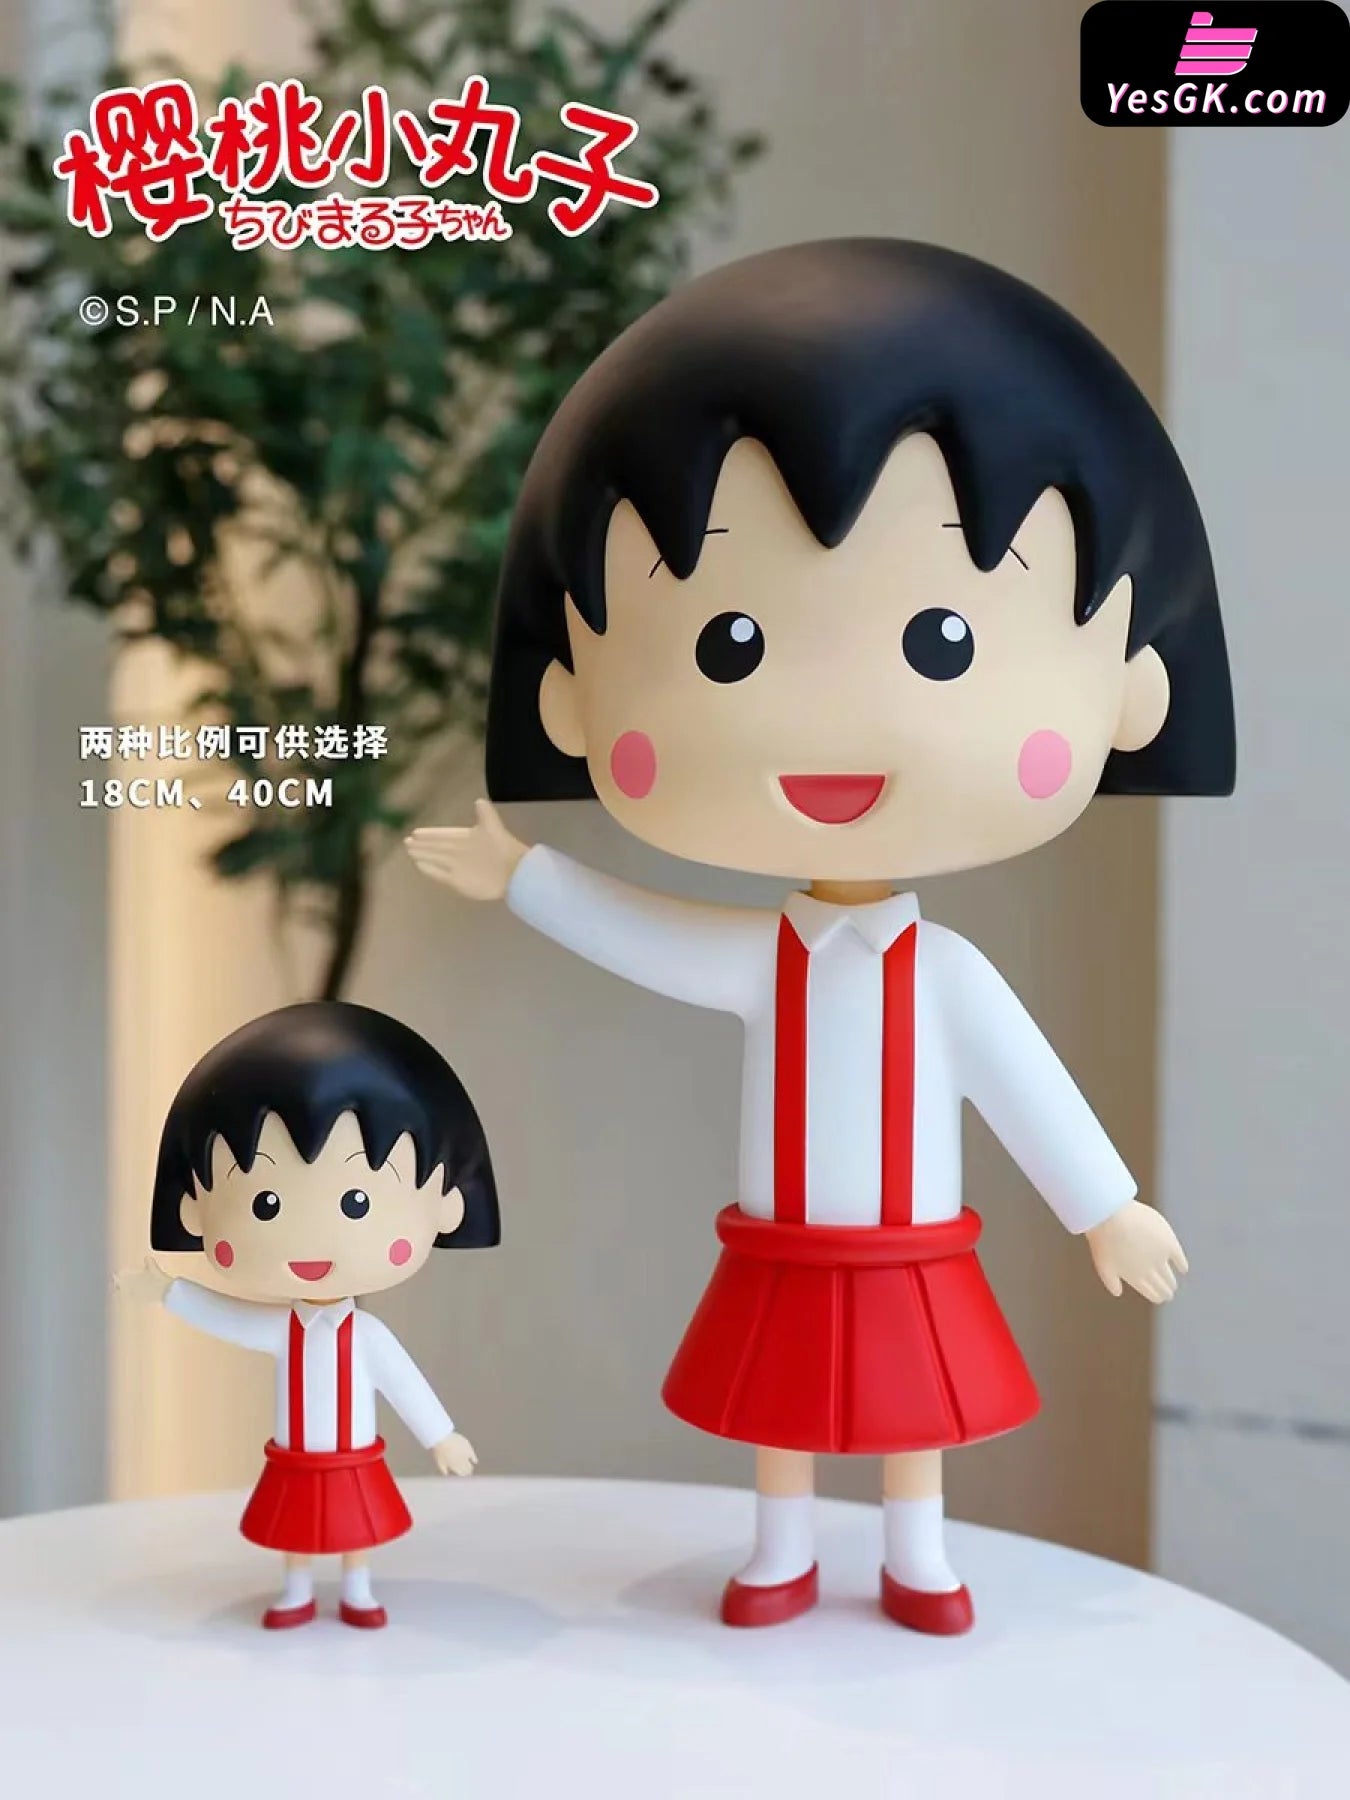 Chibimaruko Chan Family Series (Licensed) Statue - Qi Zeng Da Wang Studio & Meng Jiang [In-Stock]